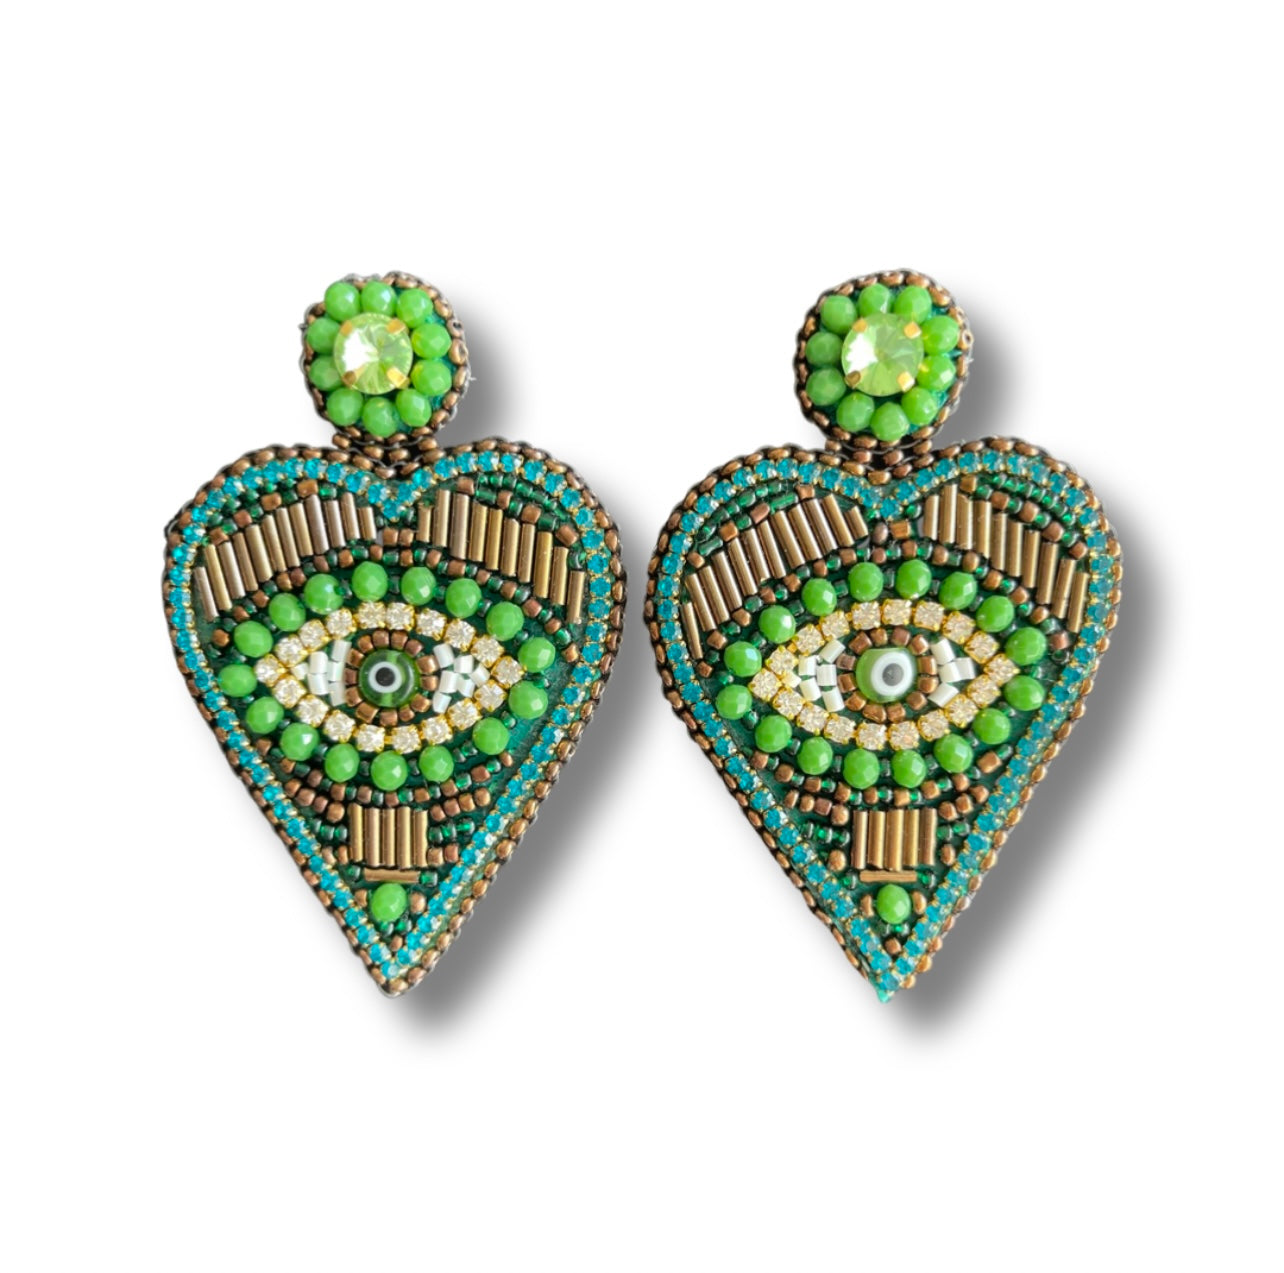 05. Green heart earrings